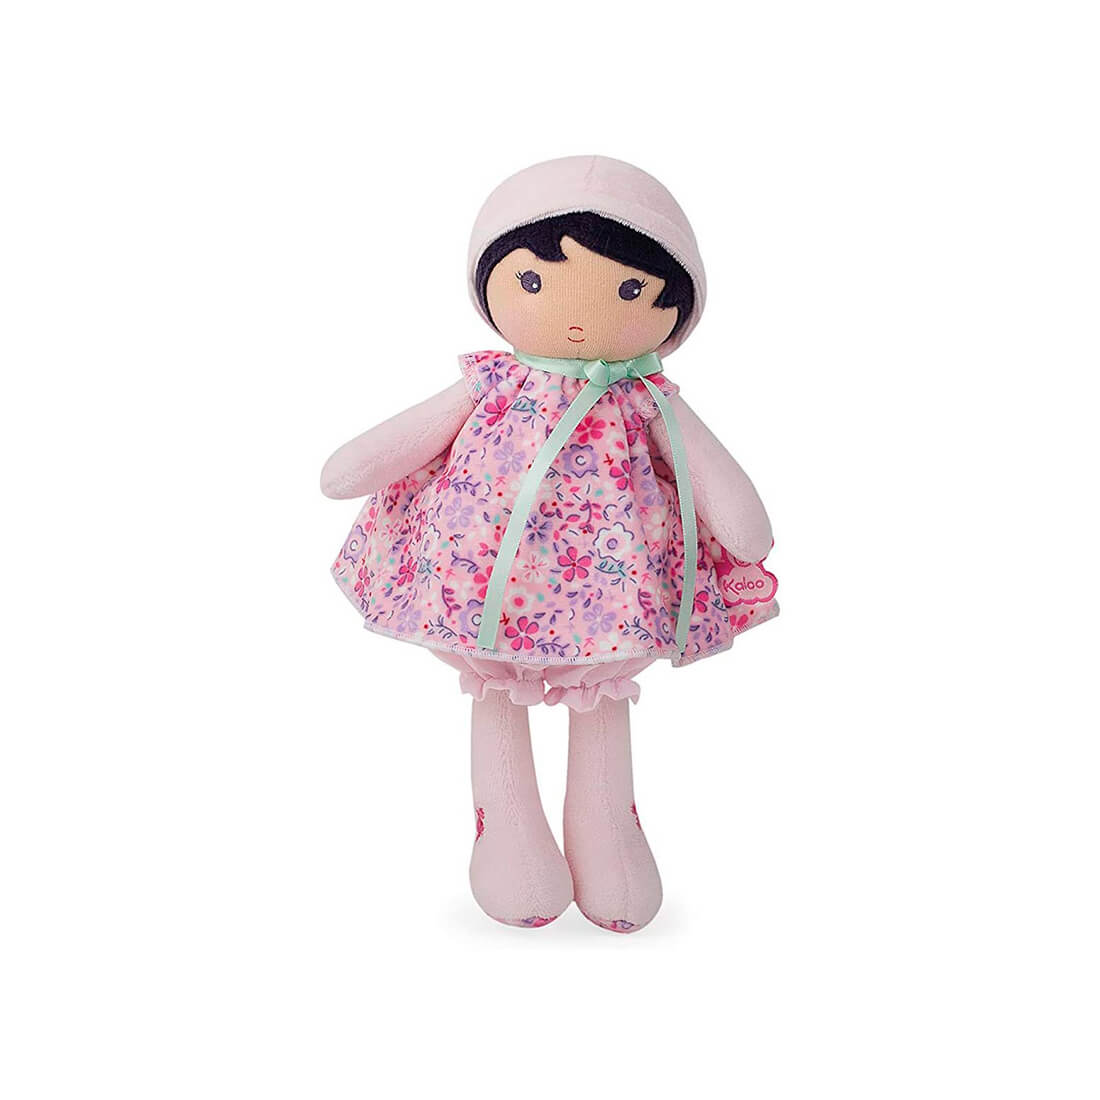 Текстильная кукла Kaloo "Fleur", в розовом платье, серия "Tendresse de Kaloo", 25 см - фото №1